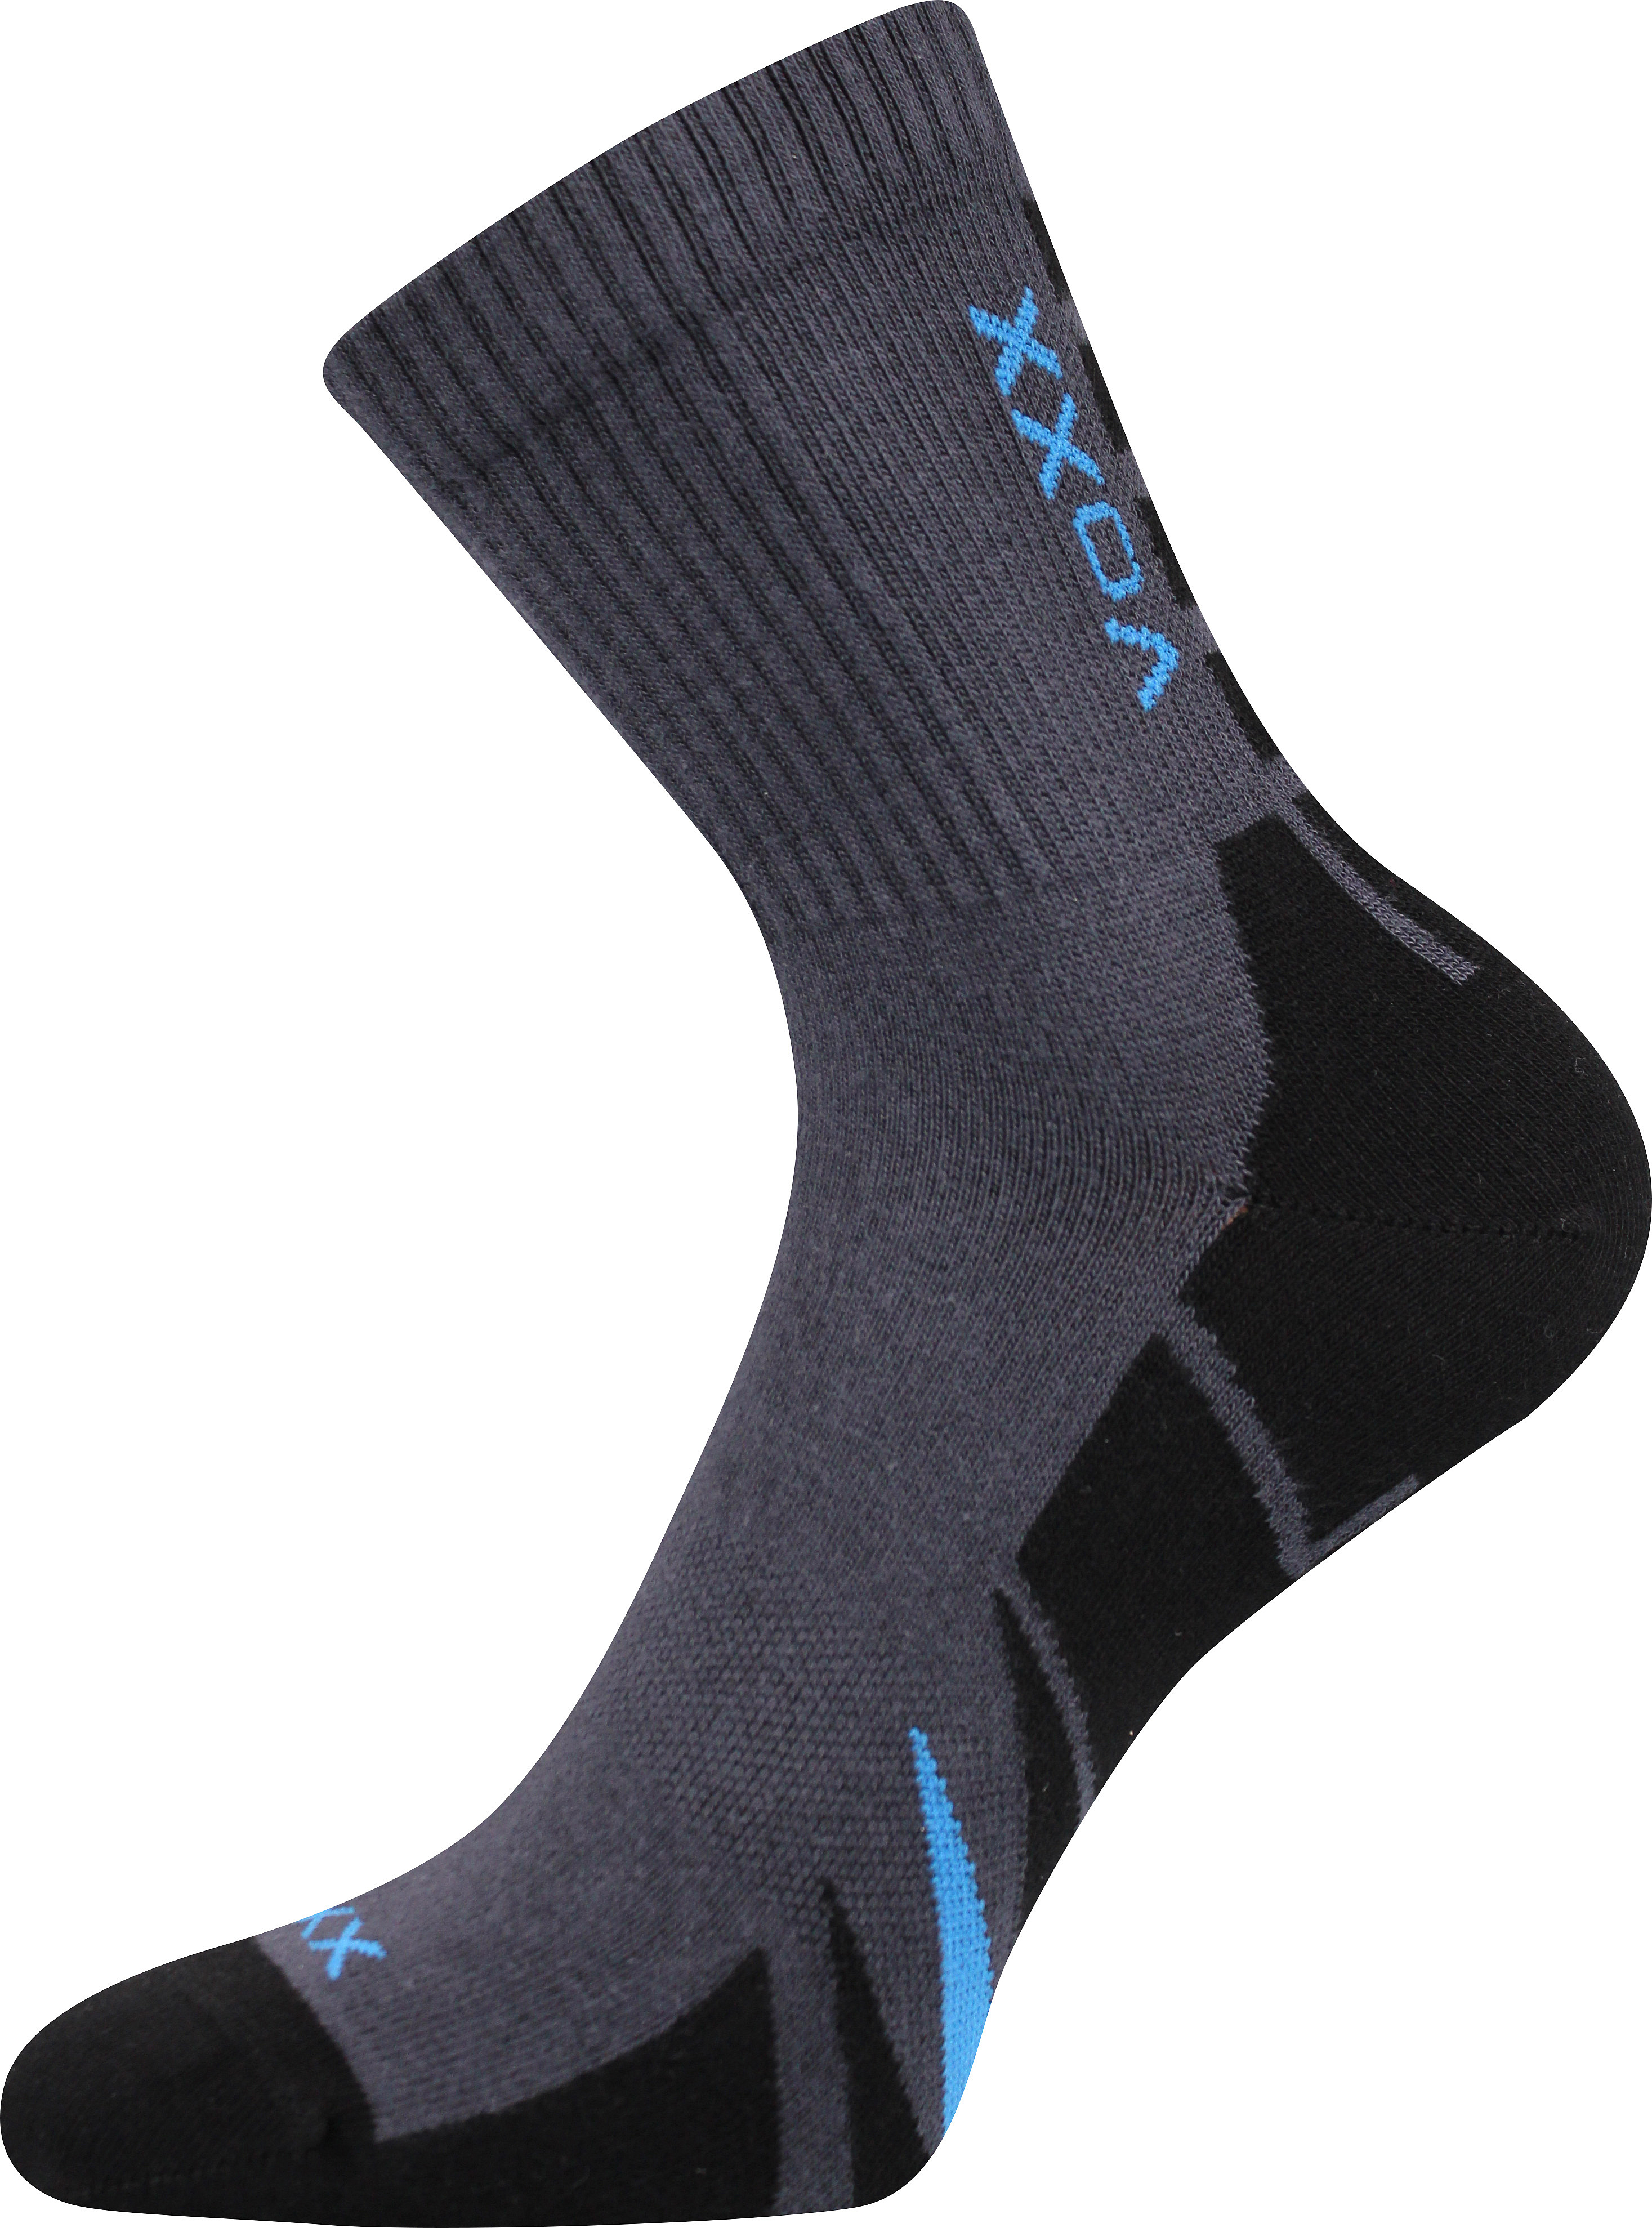 Ponožky sportovní Voxx Hermes - tmavě šedé-černé, 35-38